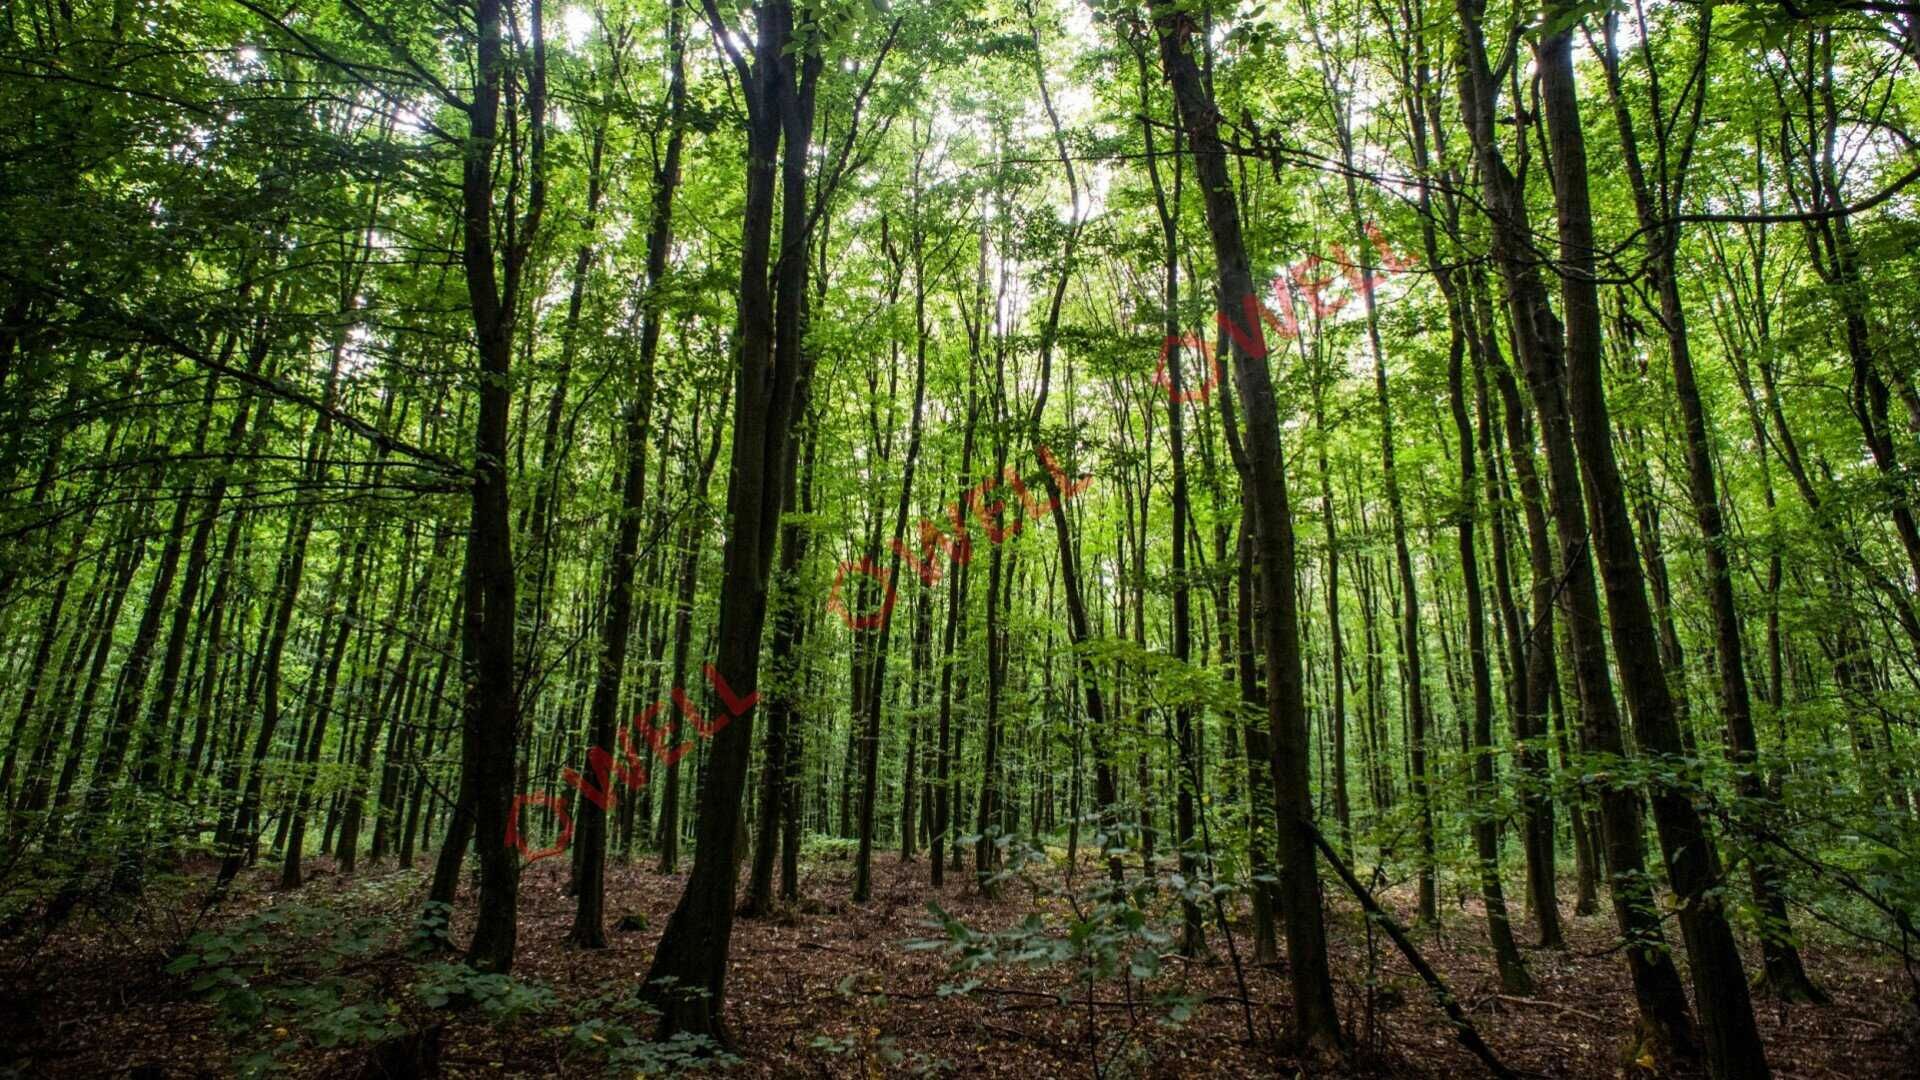 De vânzare 50.000 m2 pădure, în Kuvaszó, comuna Brăduț